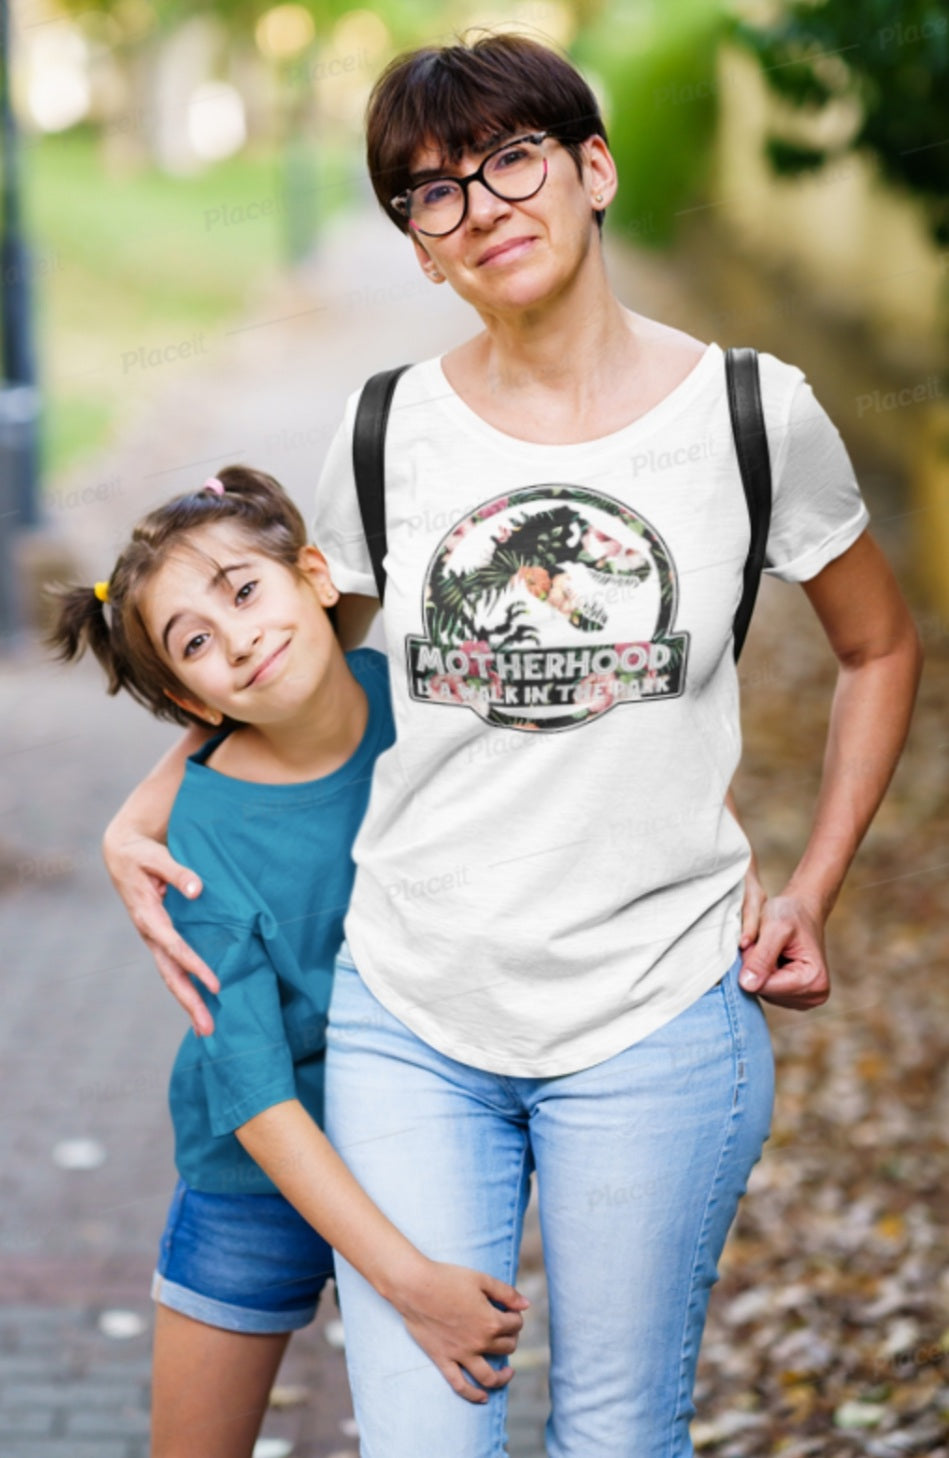 Motherhood is a Walk in the Park T-Shirt